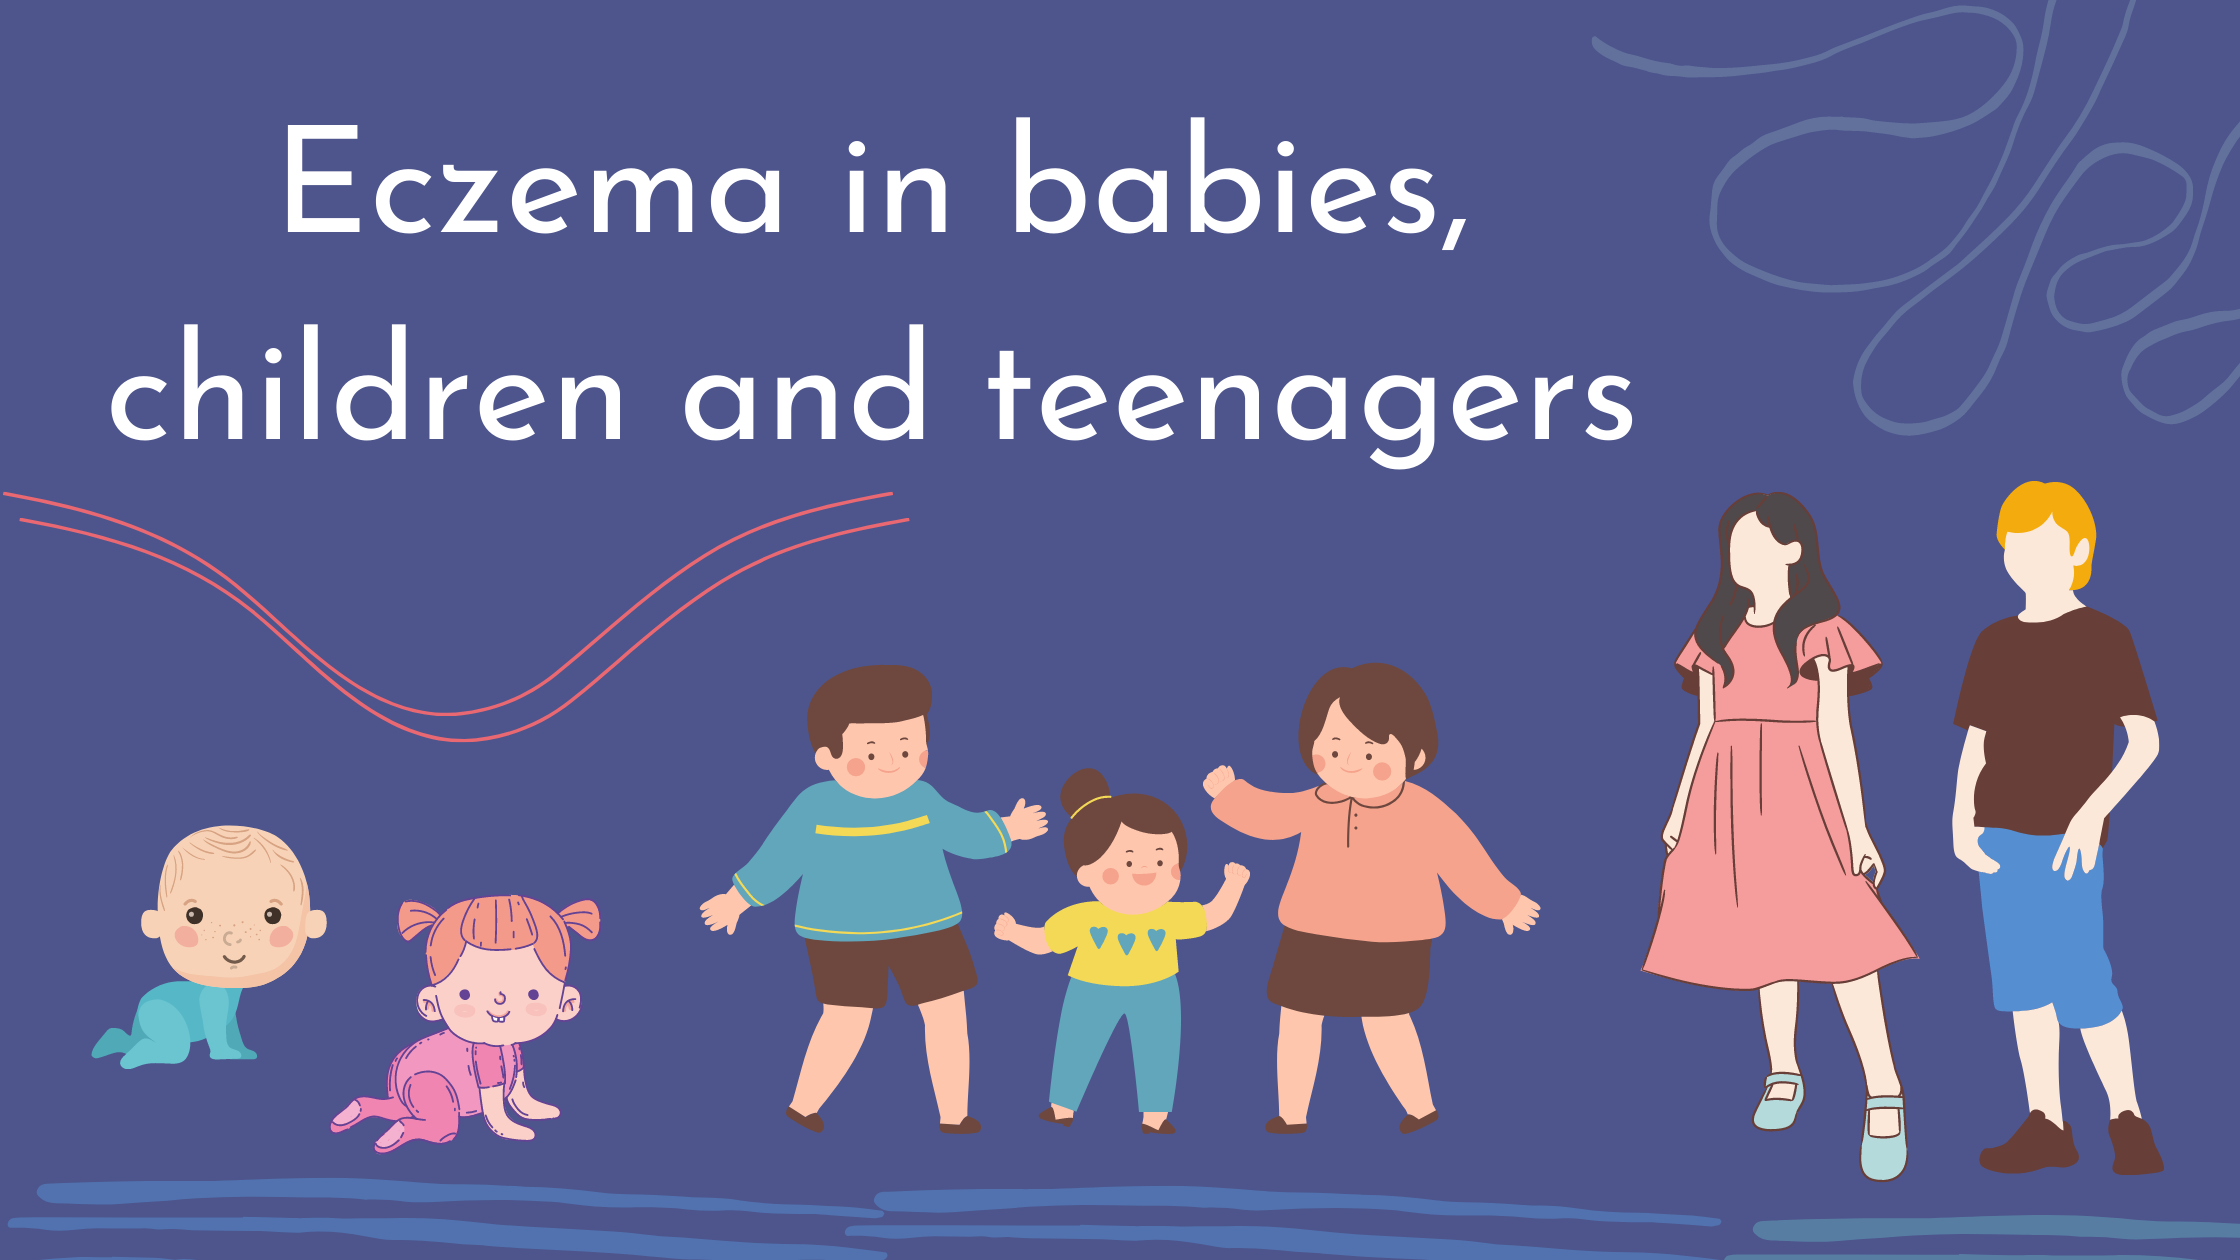 Eczema in babies, children and teenagers